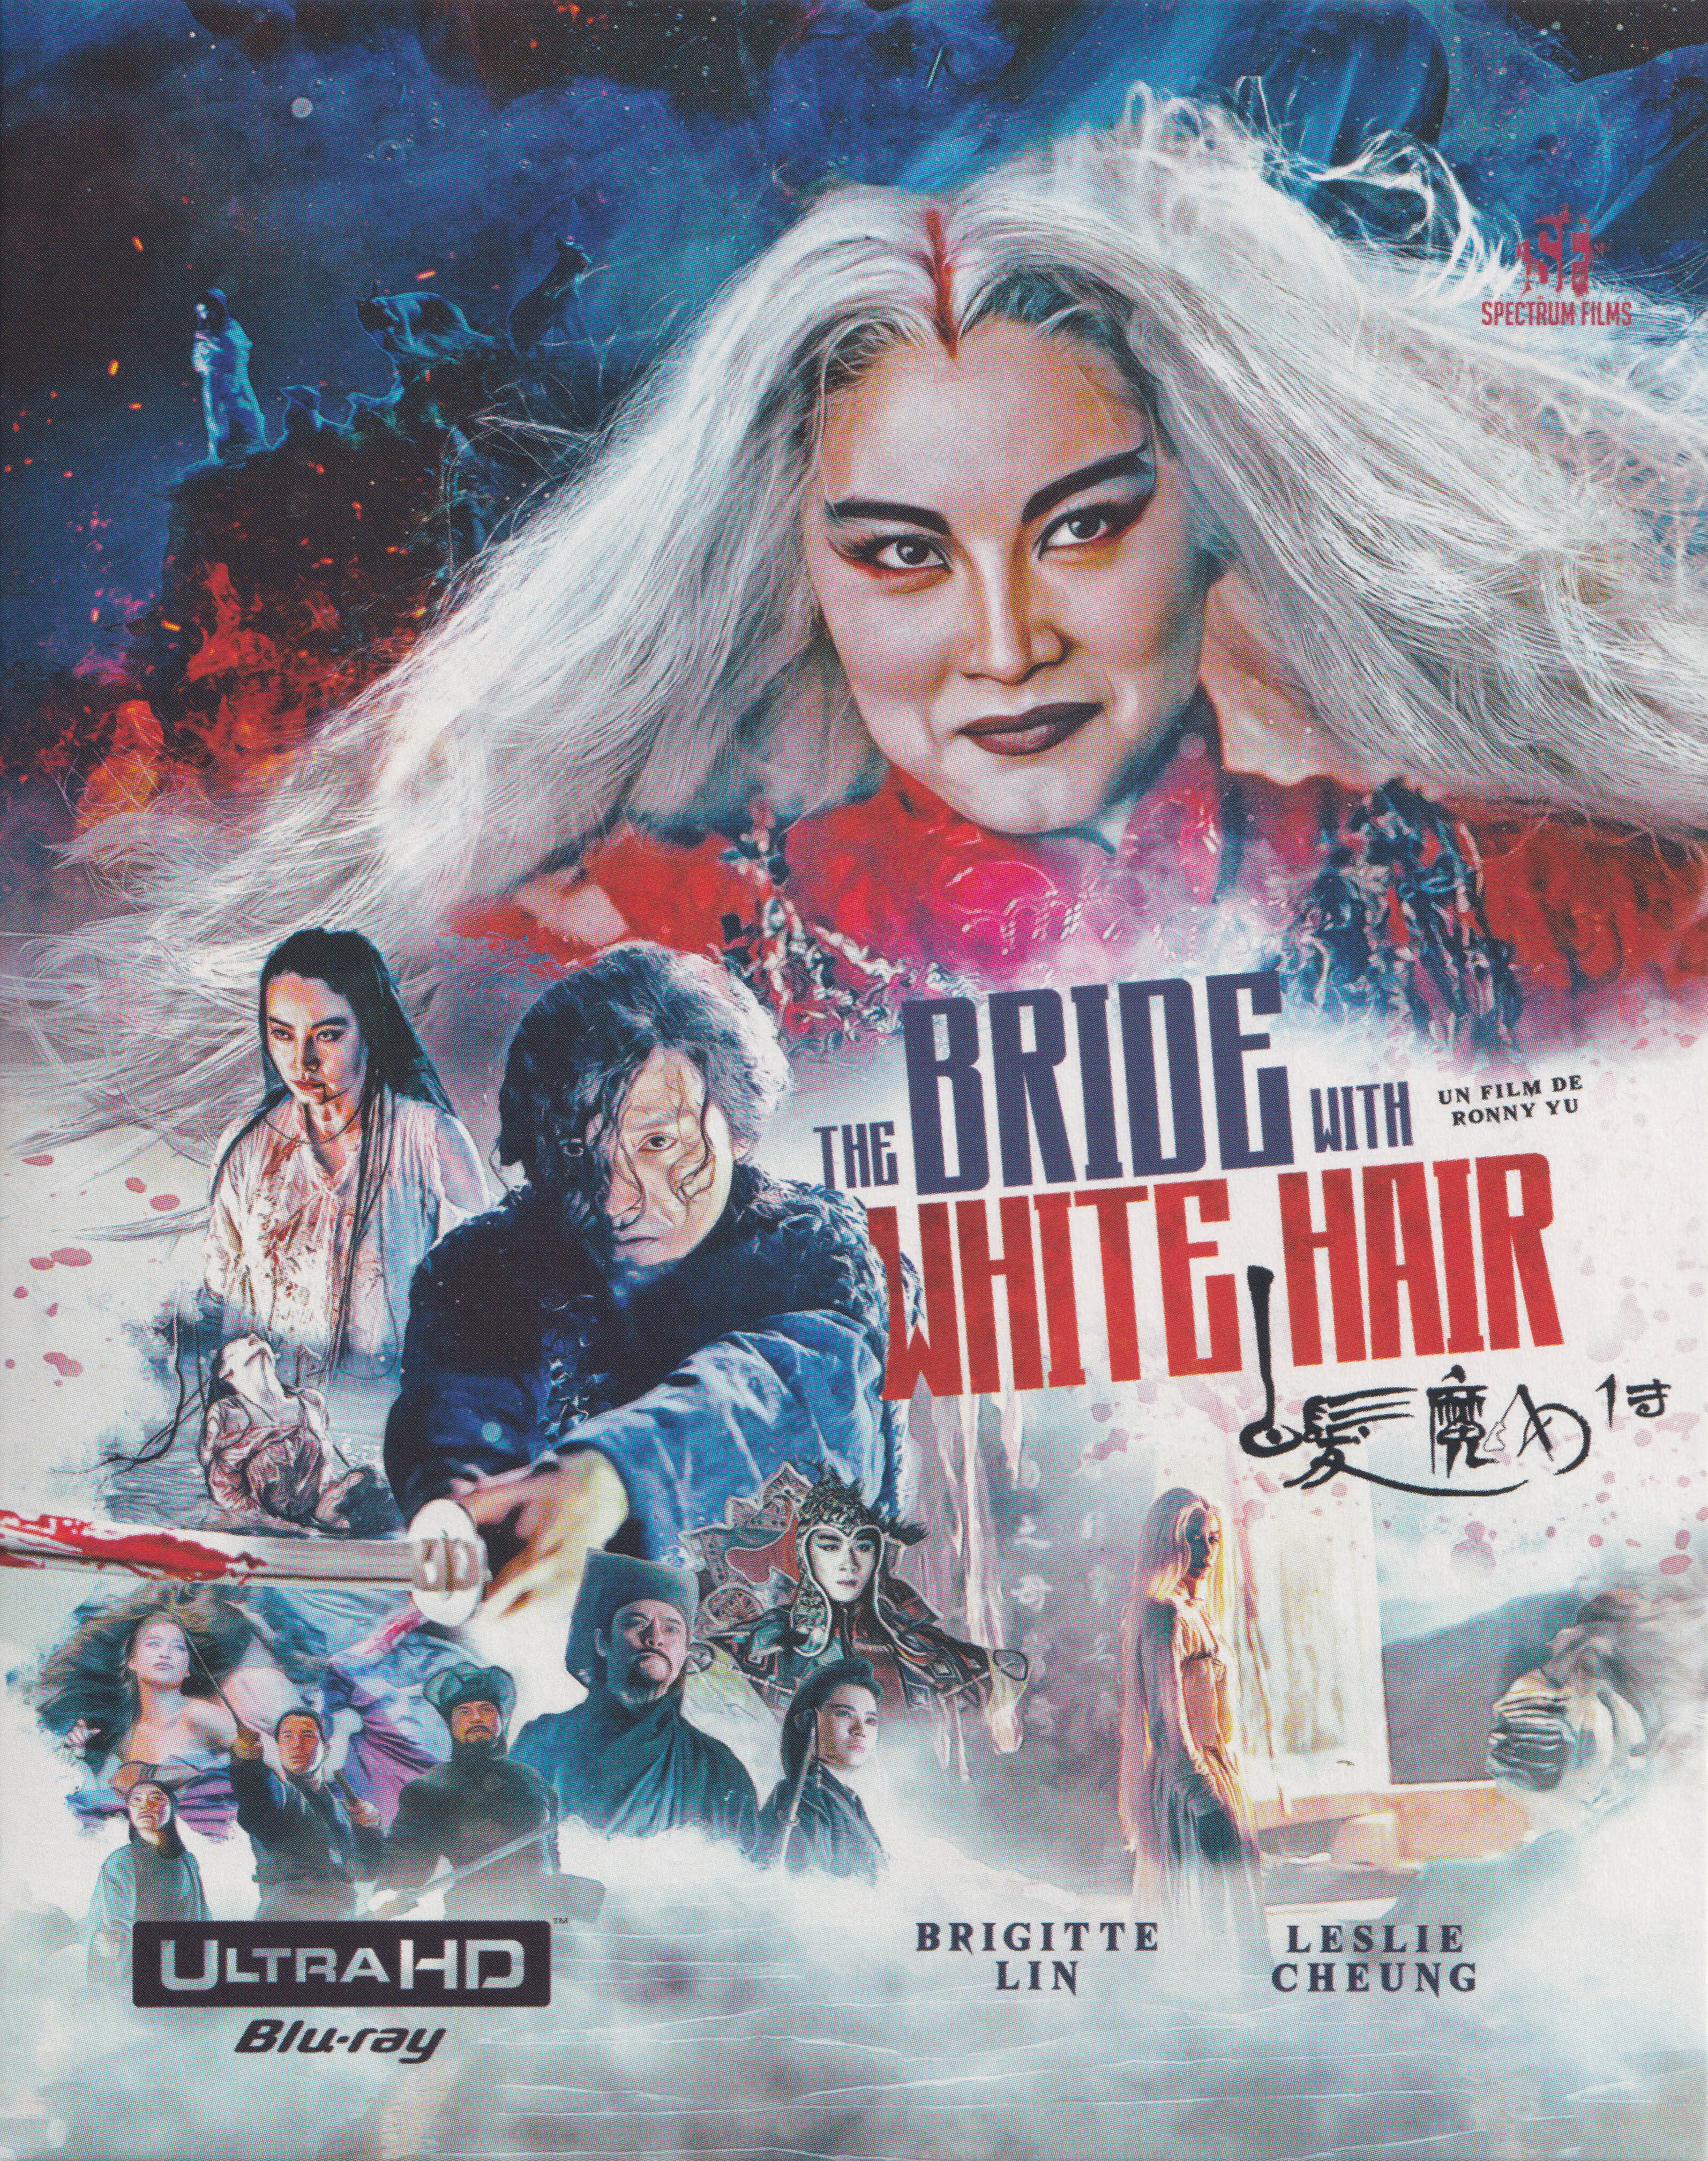 白发魔女传 [UHD原盘国配DIY简繁字幕] The Bride with White Hair 1993 2160p FRA UHD Blu-ray HEVC DTS-HD MA 5 1-BHYS@OurBits[62.19GB]